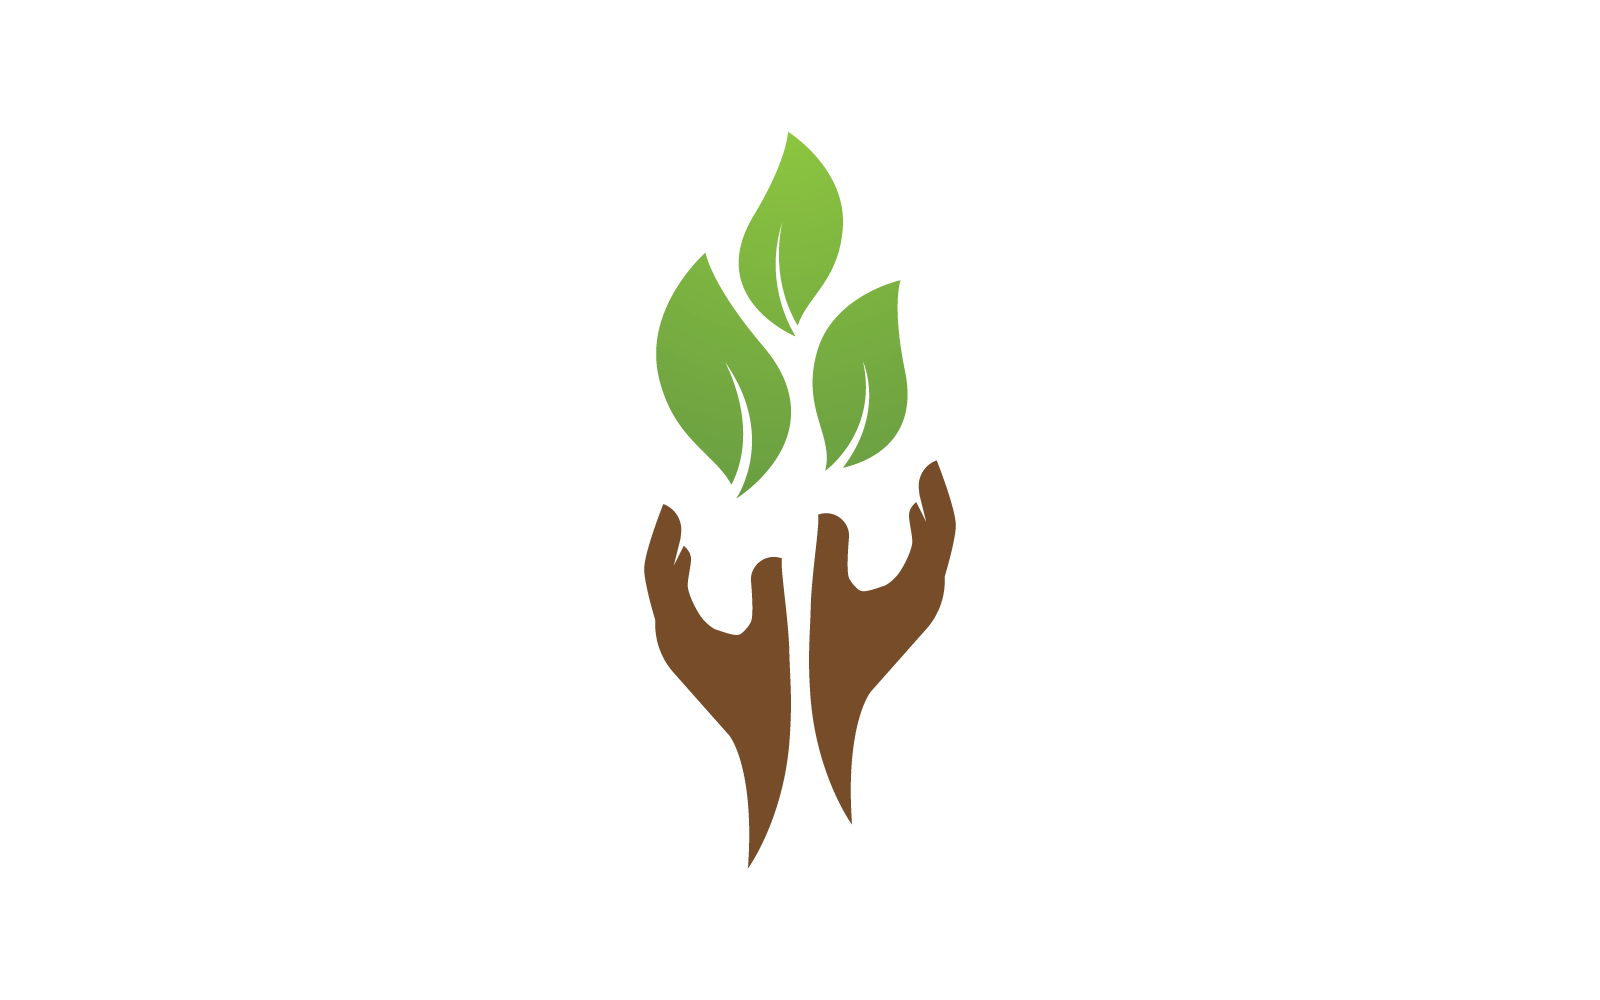 Save nature ecology logo hand and leaf design illustration Logo Template